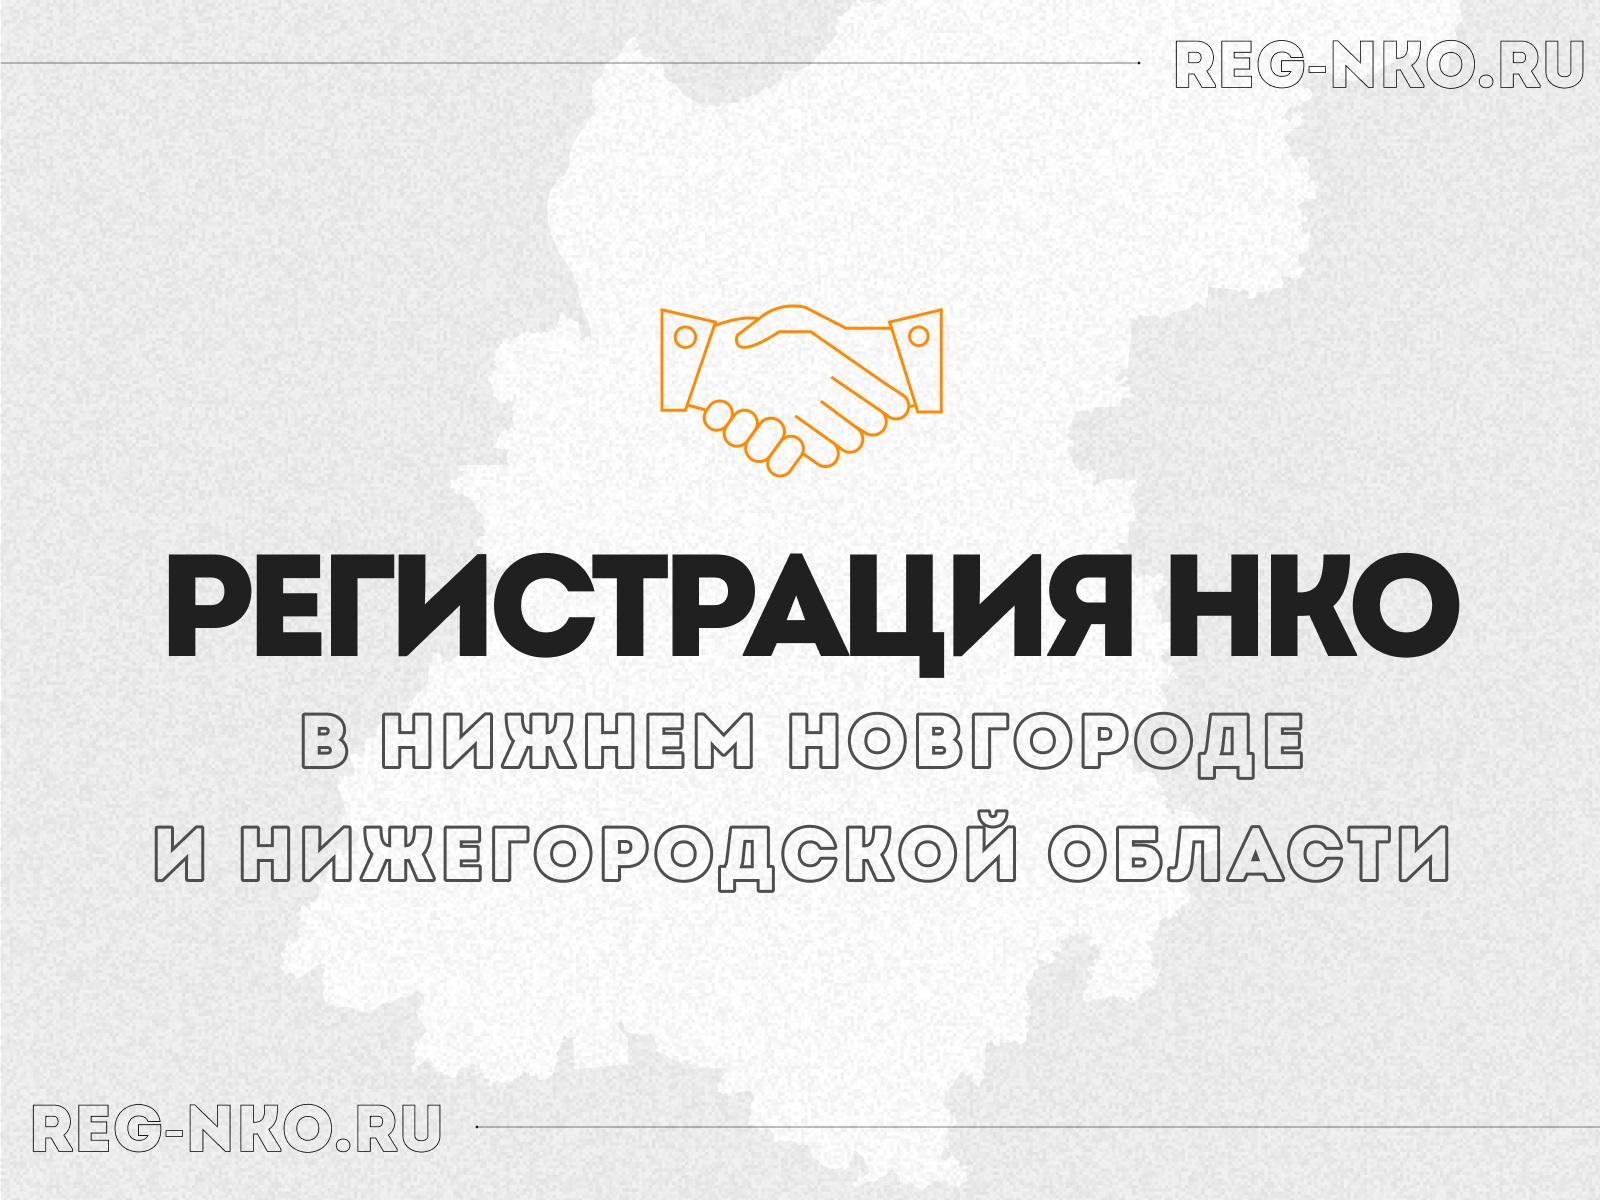 Регистрация НКО в Нижнем Новгороде и Нижегородской области